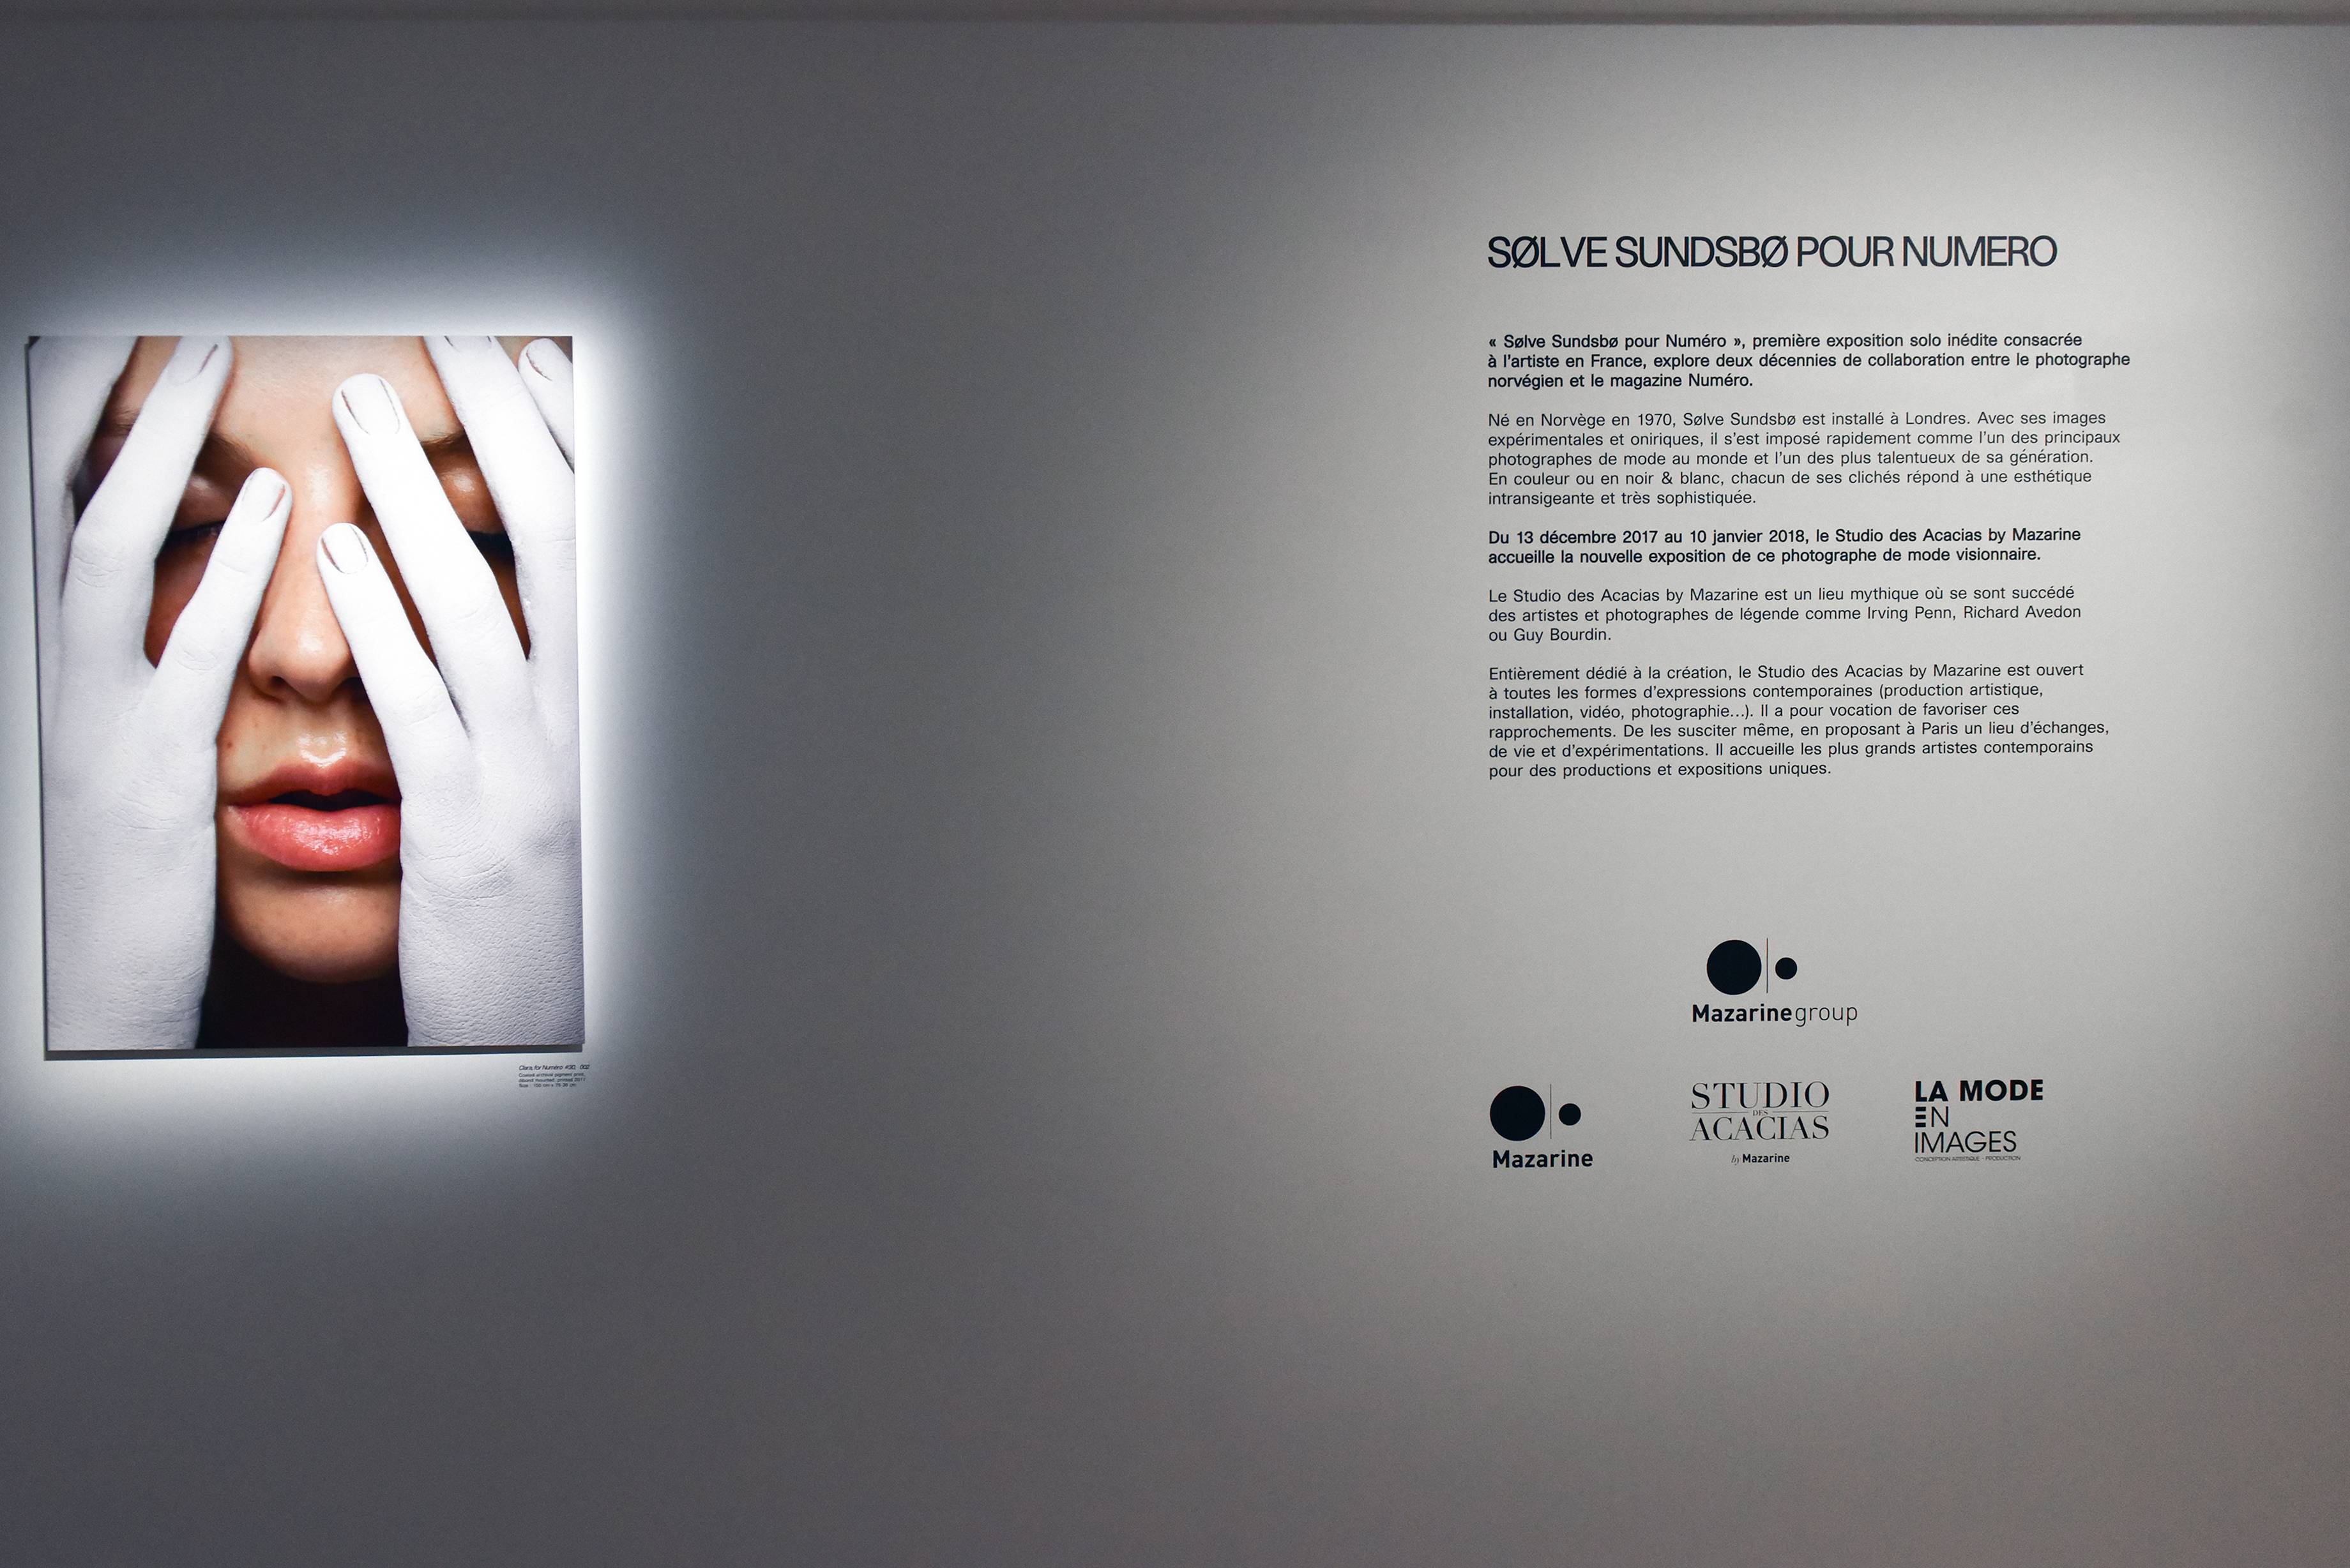 Le vernissage de l’exposition Sølve Sundsbø x Numéro au Studio des Acacias